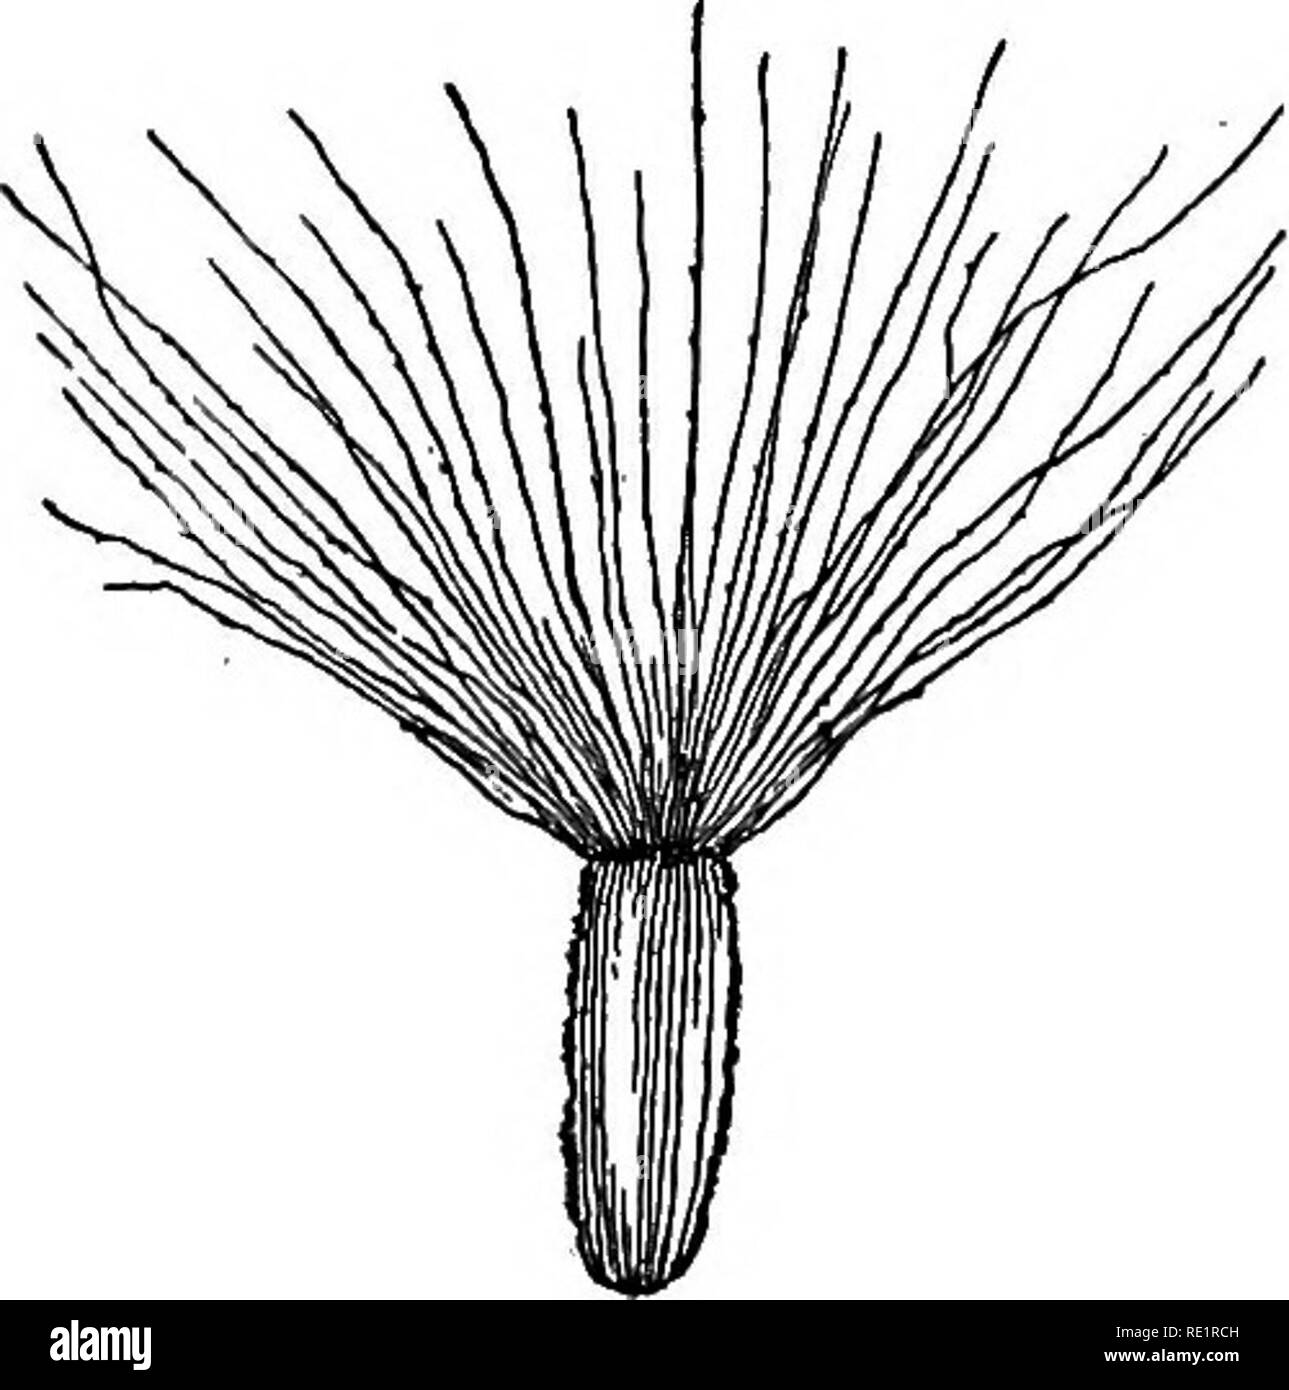 . Ein Handbuch der indischen Botanik. Botanik. Die BLUME 85 der Haare oder Borsten, wie in kukur - songa oder kukshima und ein so behaarte Kelch ist als pappus (Abb. bekannt. 81). Wenn der Kelch ist auf den Thalamus direkt eingefügt, so dass es den niedrigsten Wirtel einer Blume, sagte es ist minderwertig sein in Bezug auf die Stempel, die die höchste Wirtel, und daher gesagt wird, um überlegen zu sein. In einigen Fällen, die später erklärt werden, sofern der Kelch scheint von der Oberseite der Griffel zu wachsen, wenn es sagte überlegen in Bezug auf die Stempel, die in diesem Fall minderwertig ist. In einigen Blumen, wie im Jaba und Baumwolle (siehe Stockfoto